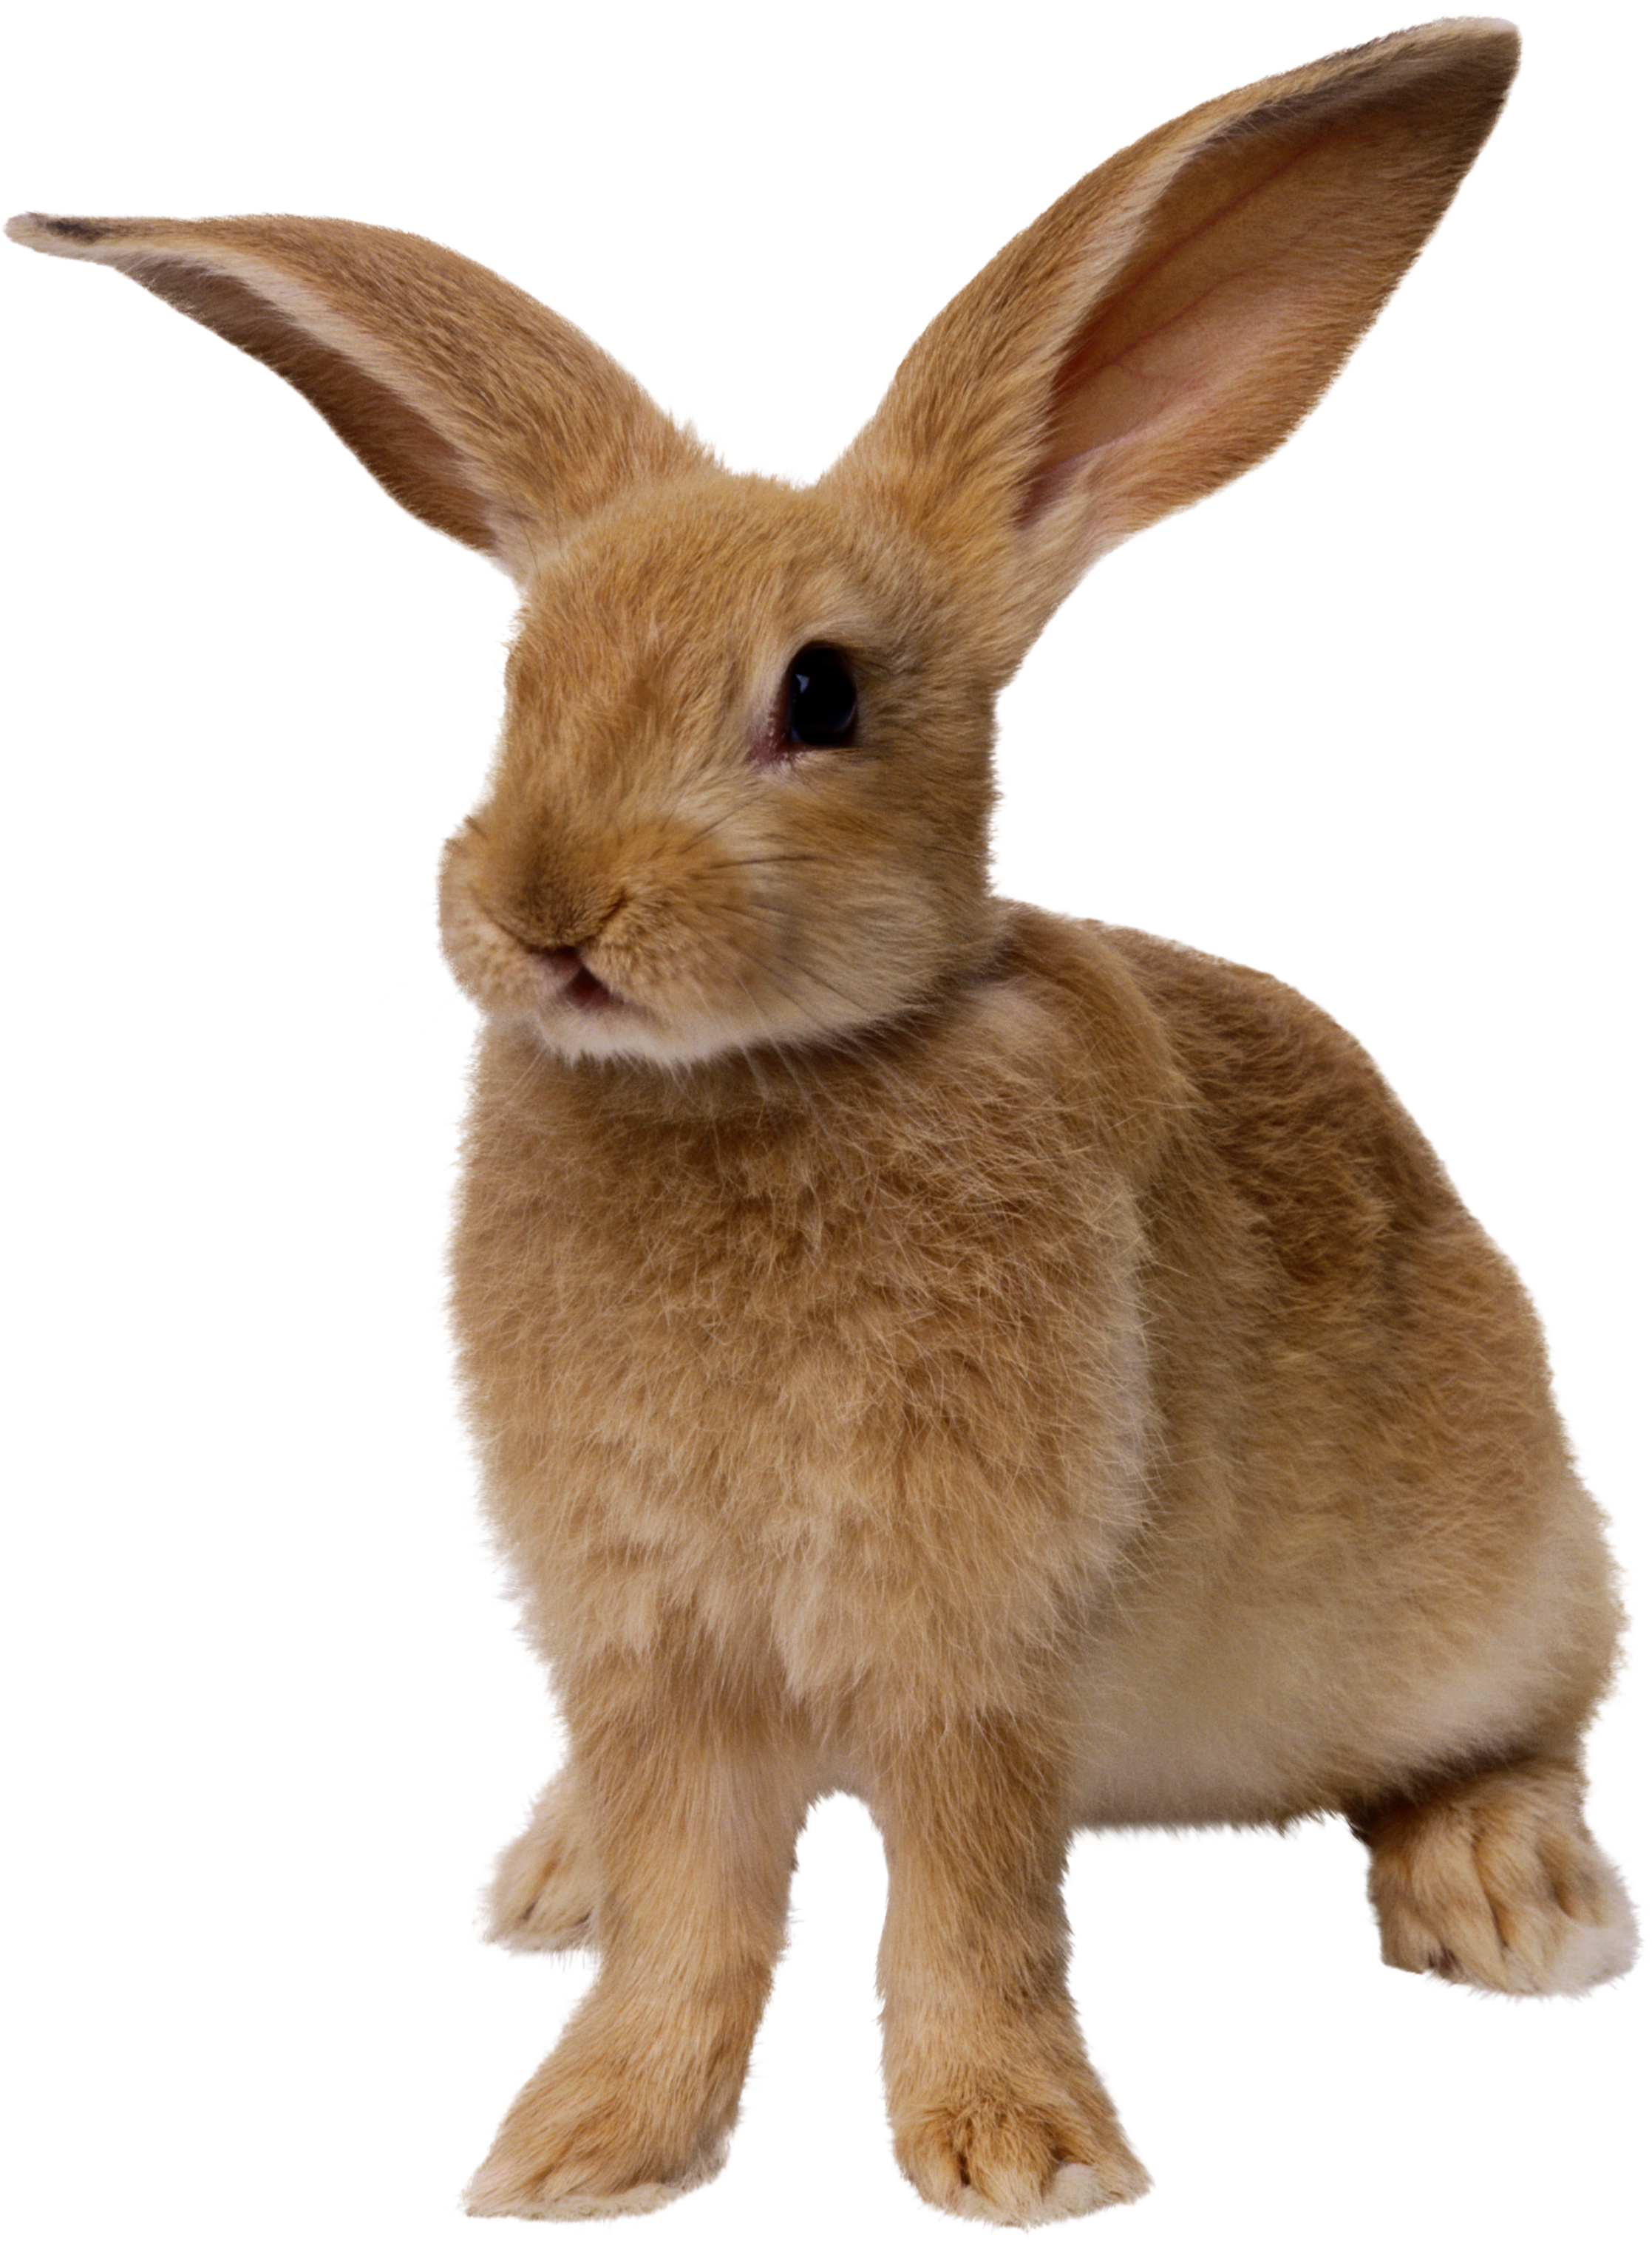 Free PNG Rabbits Bunnies - 65009